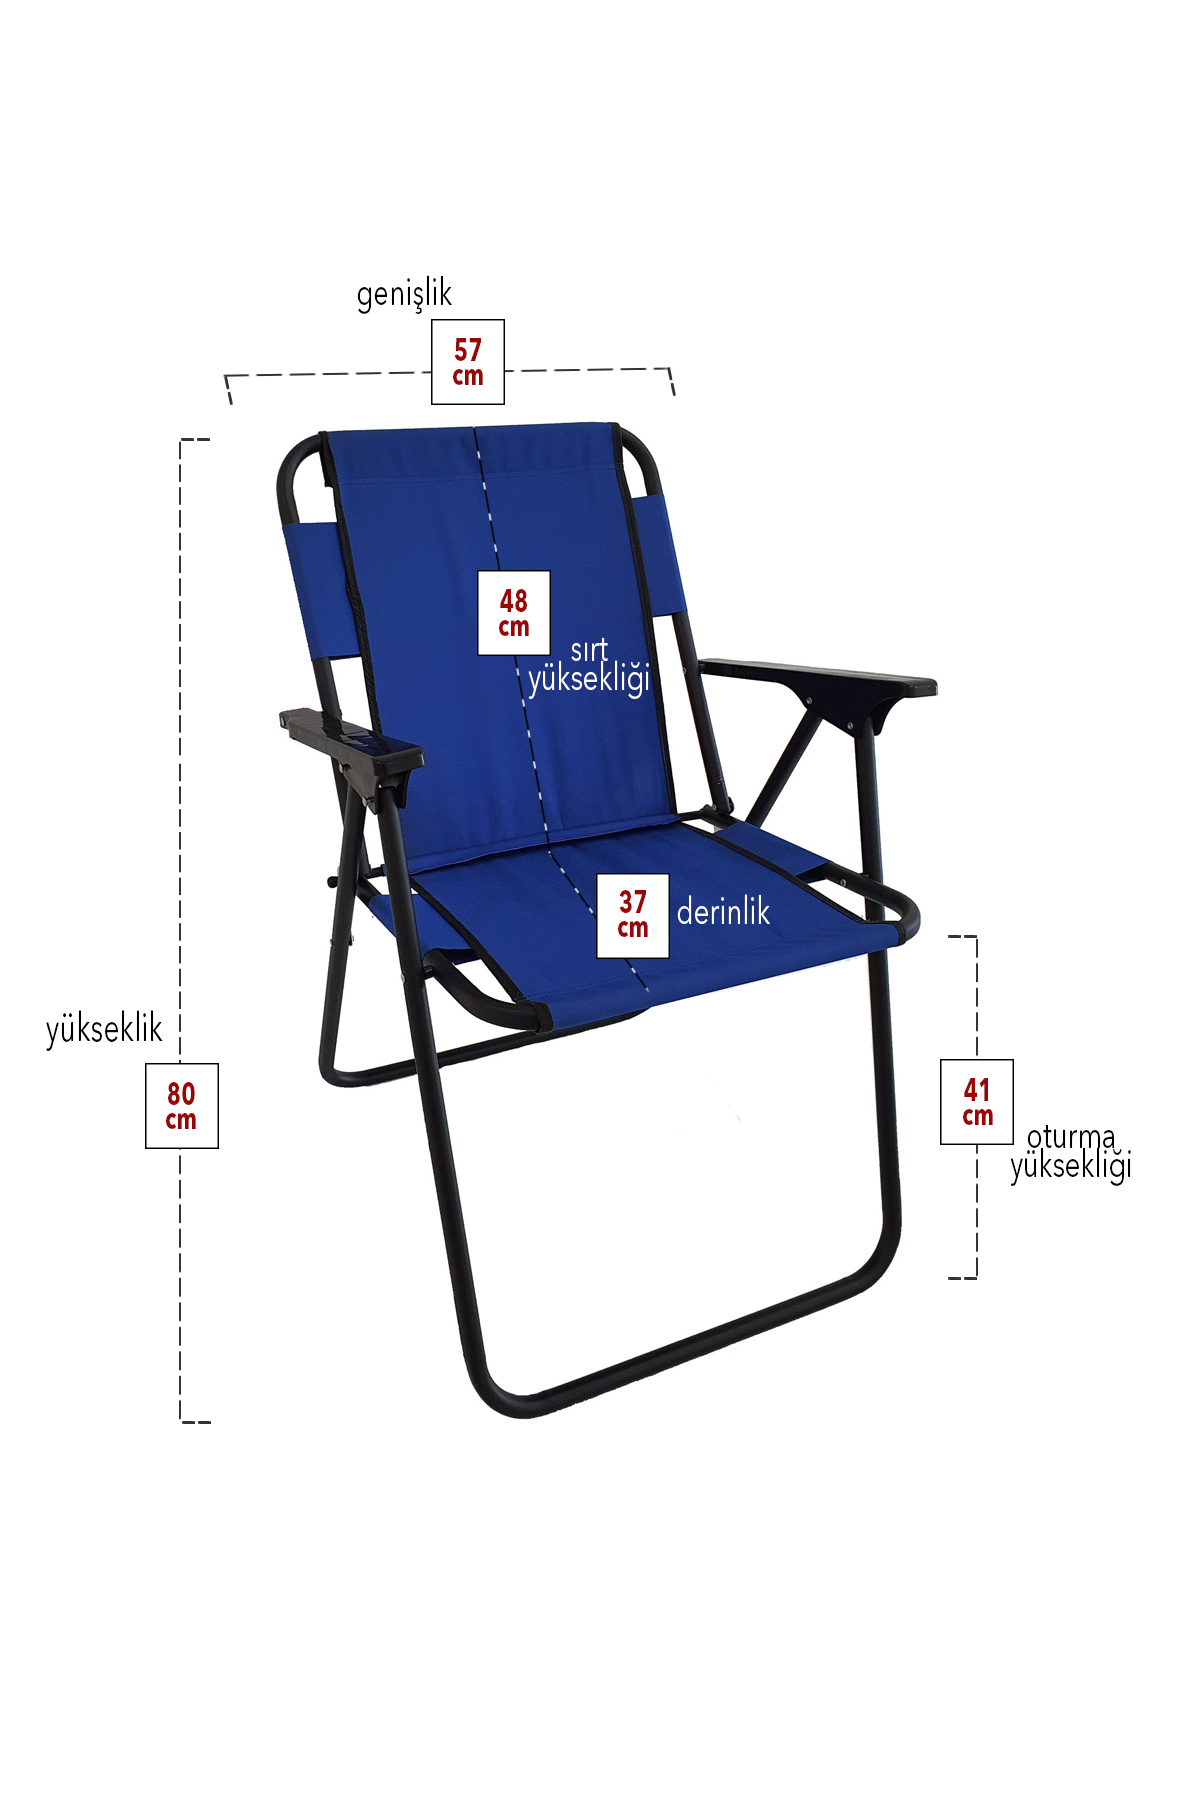 Bofigo 4 Adet Kamp Sandalyesi Katlanır Sandalye Piknik Sandalyesi Plaj Sandalyesi Mavi